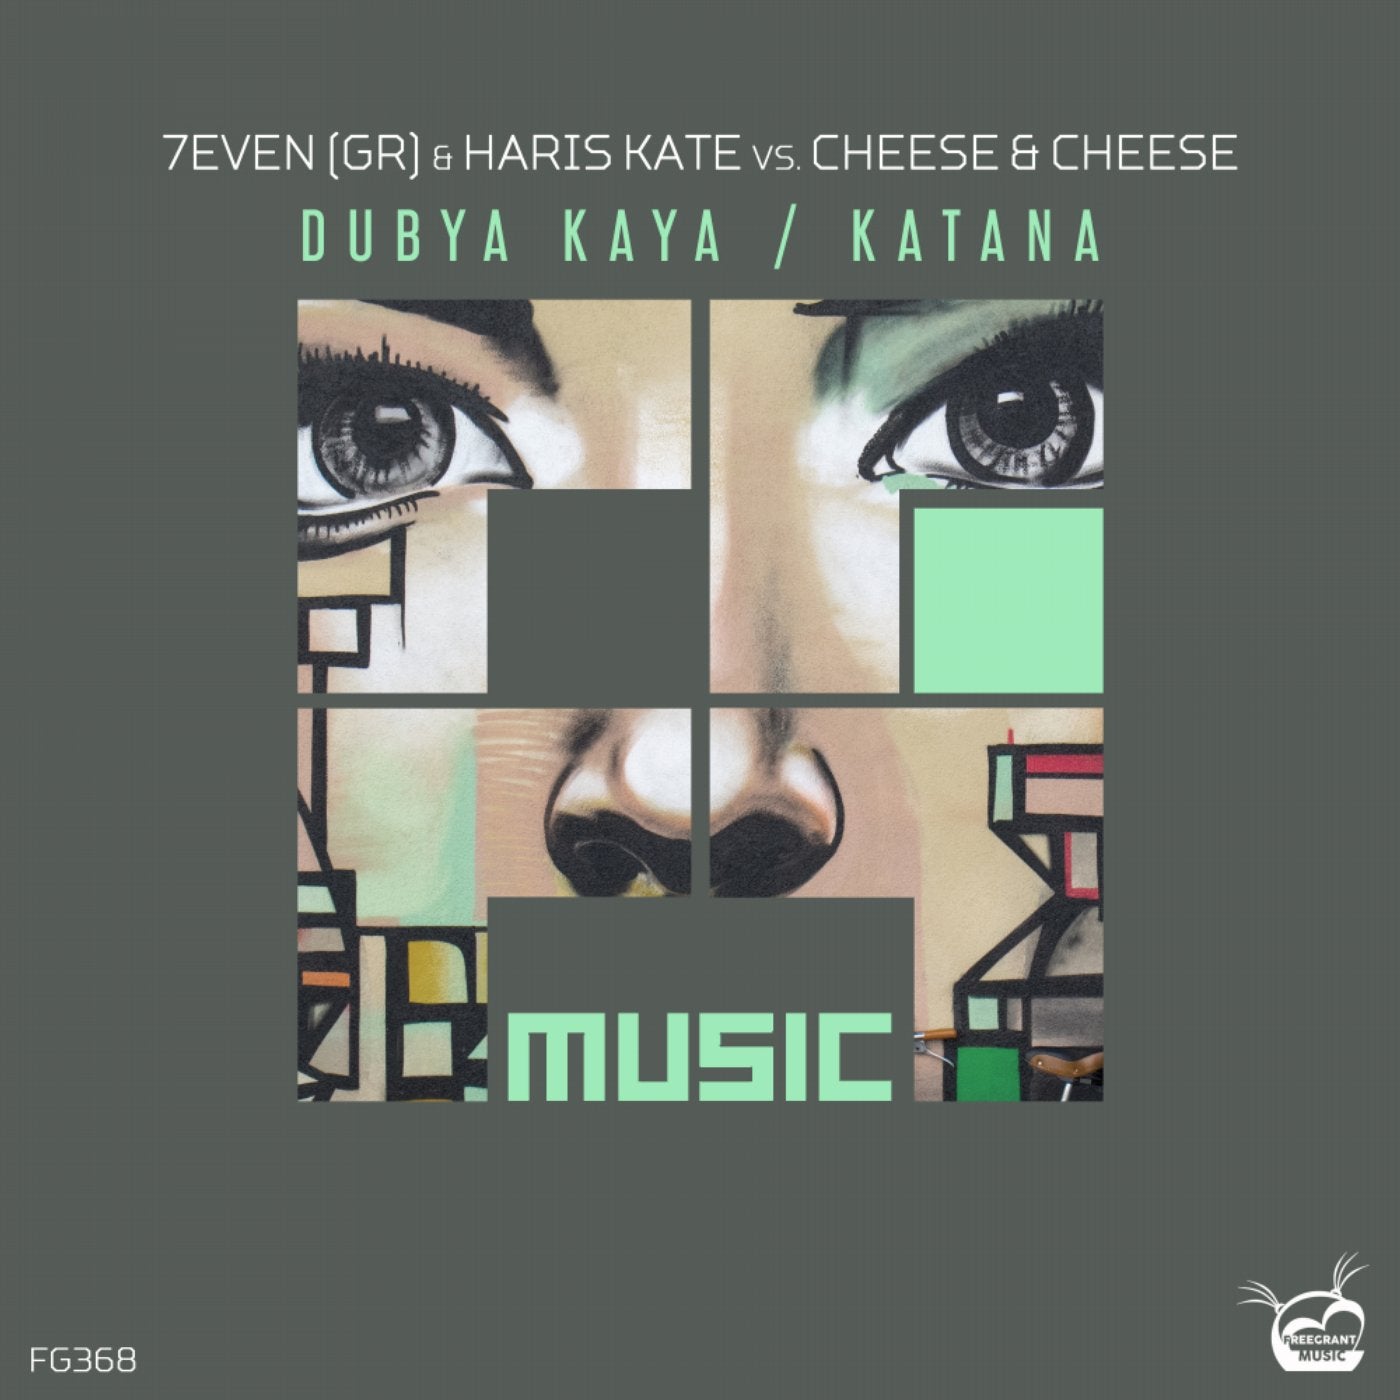 Dubya Kaya / Katana